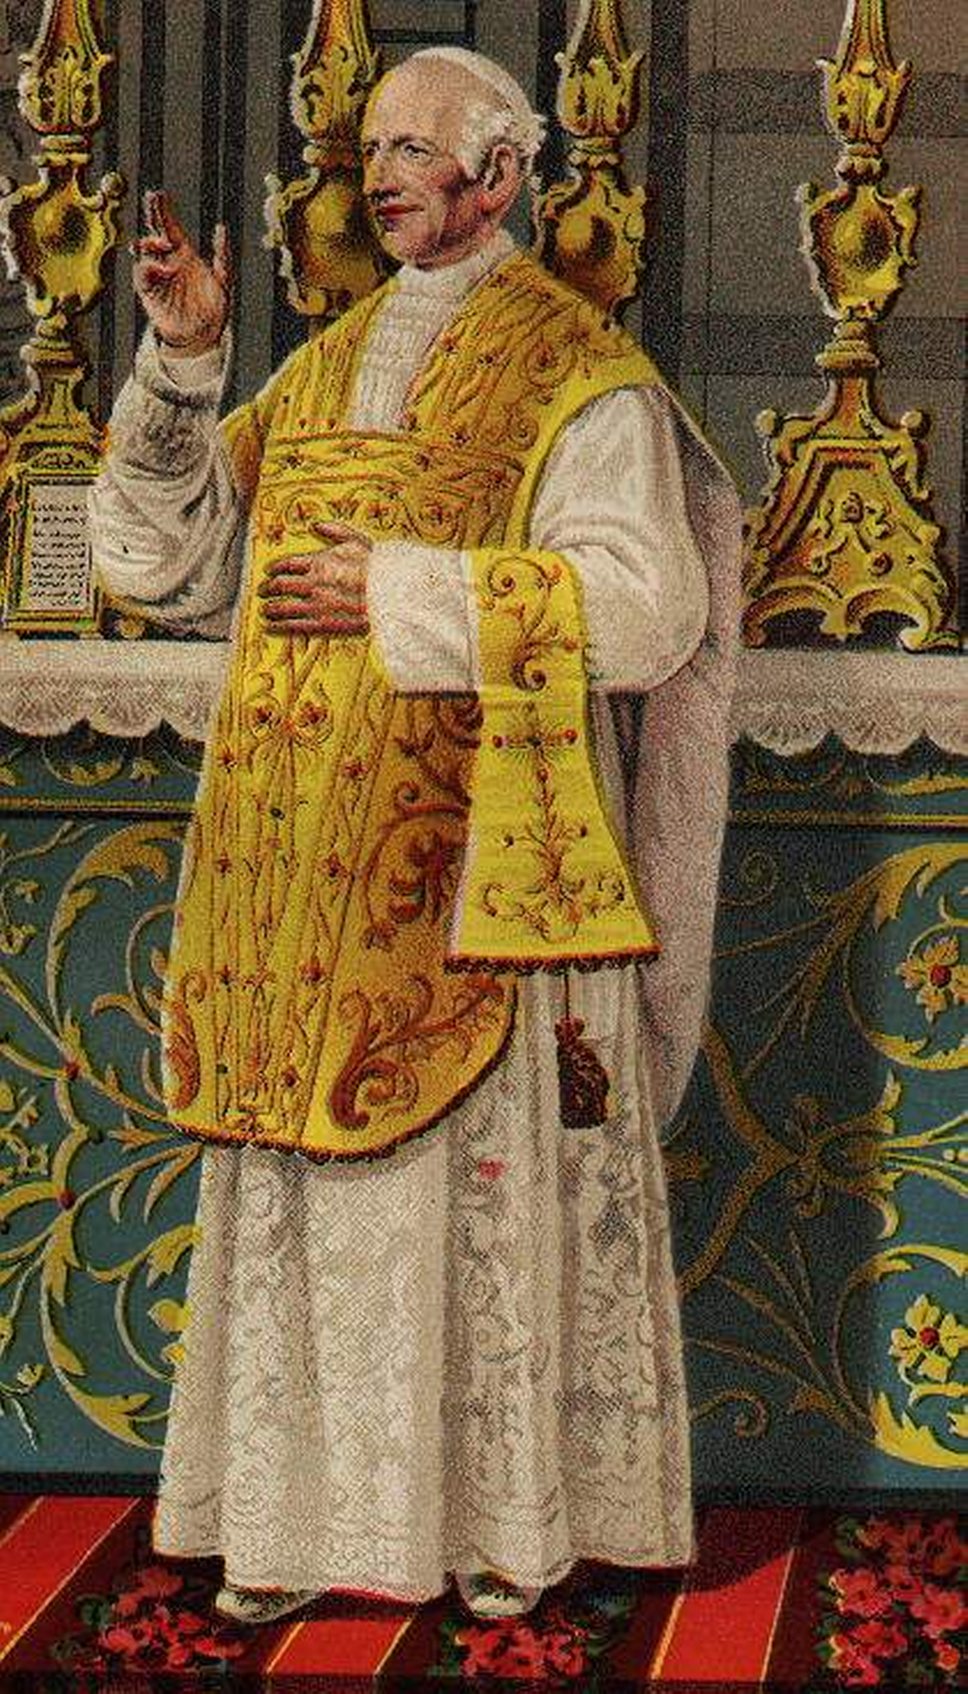 Традиционные торжественные облачения понтификов во все времена были роскошны. Папа римский Лев ХХIII 